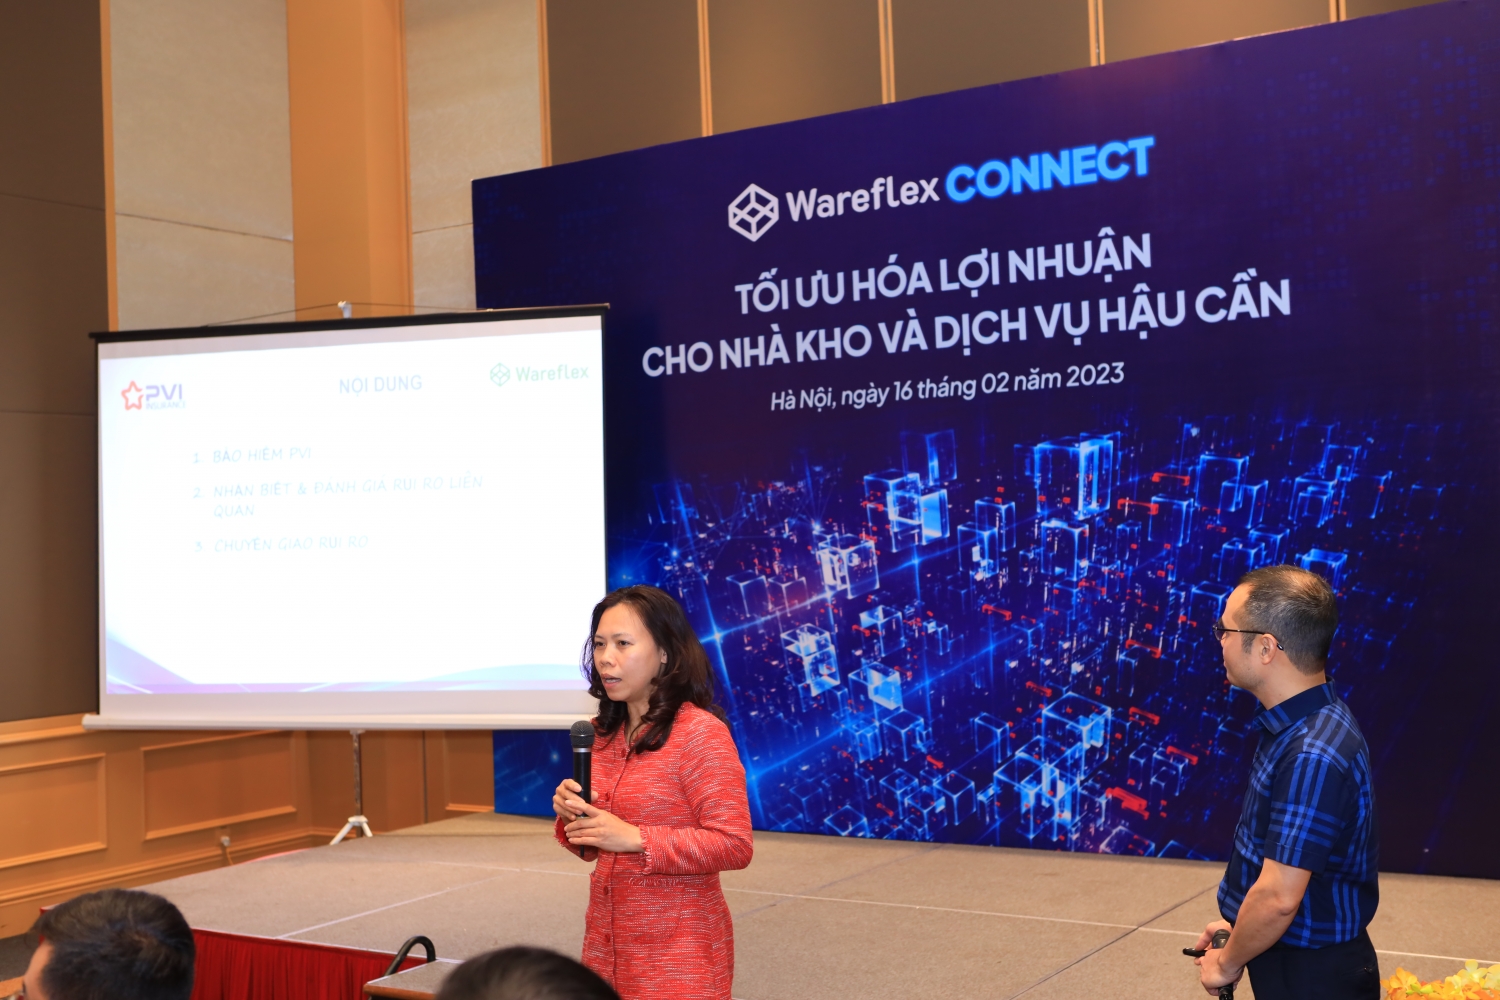 Wareflex phối hợp cùng Bảo hiểm PVI tổ chức chuỗi hội thảo cho các nhà cung cấp nhà kho và dịch vụ hậu cần